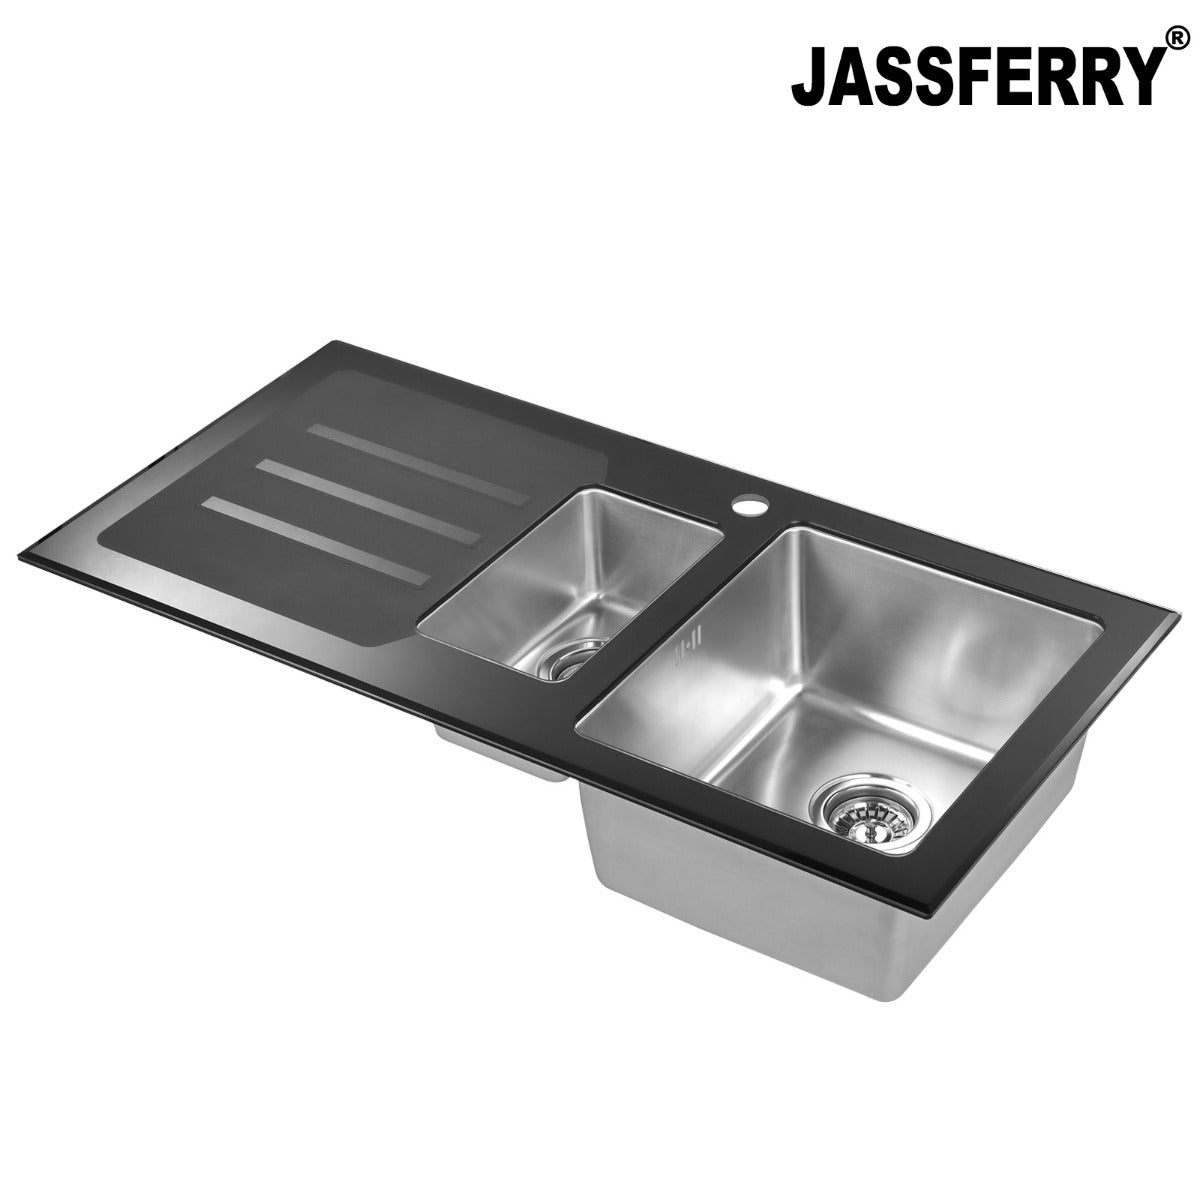 JassferryJASSFERRY Kitchen Sink Stainless Steel 1.5 Bowl Black Glass Lefthand DrainerKitchen Sinks